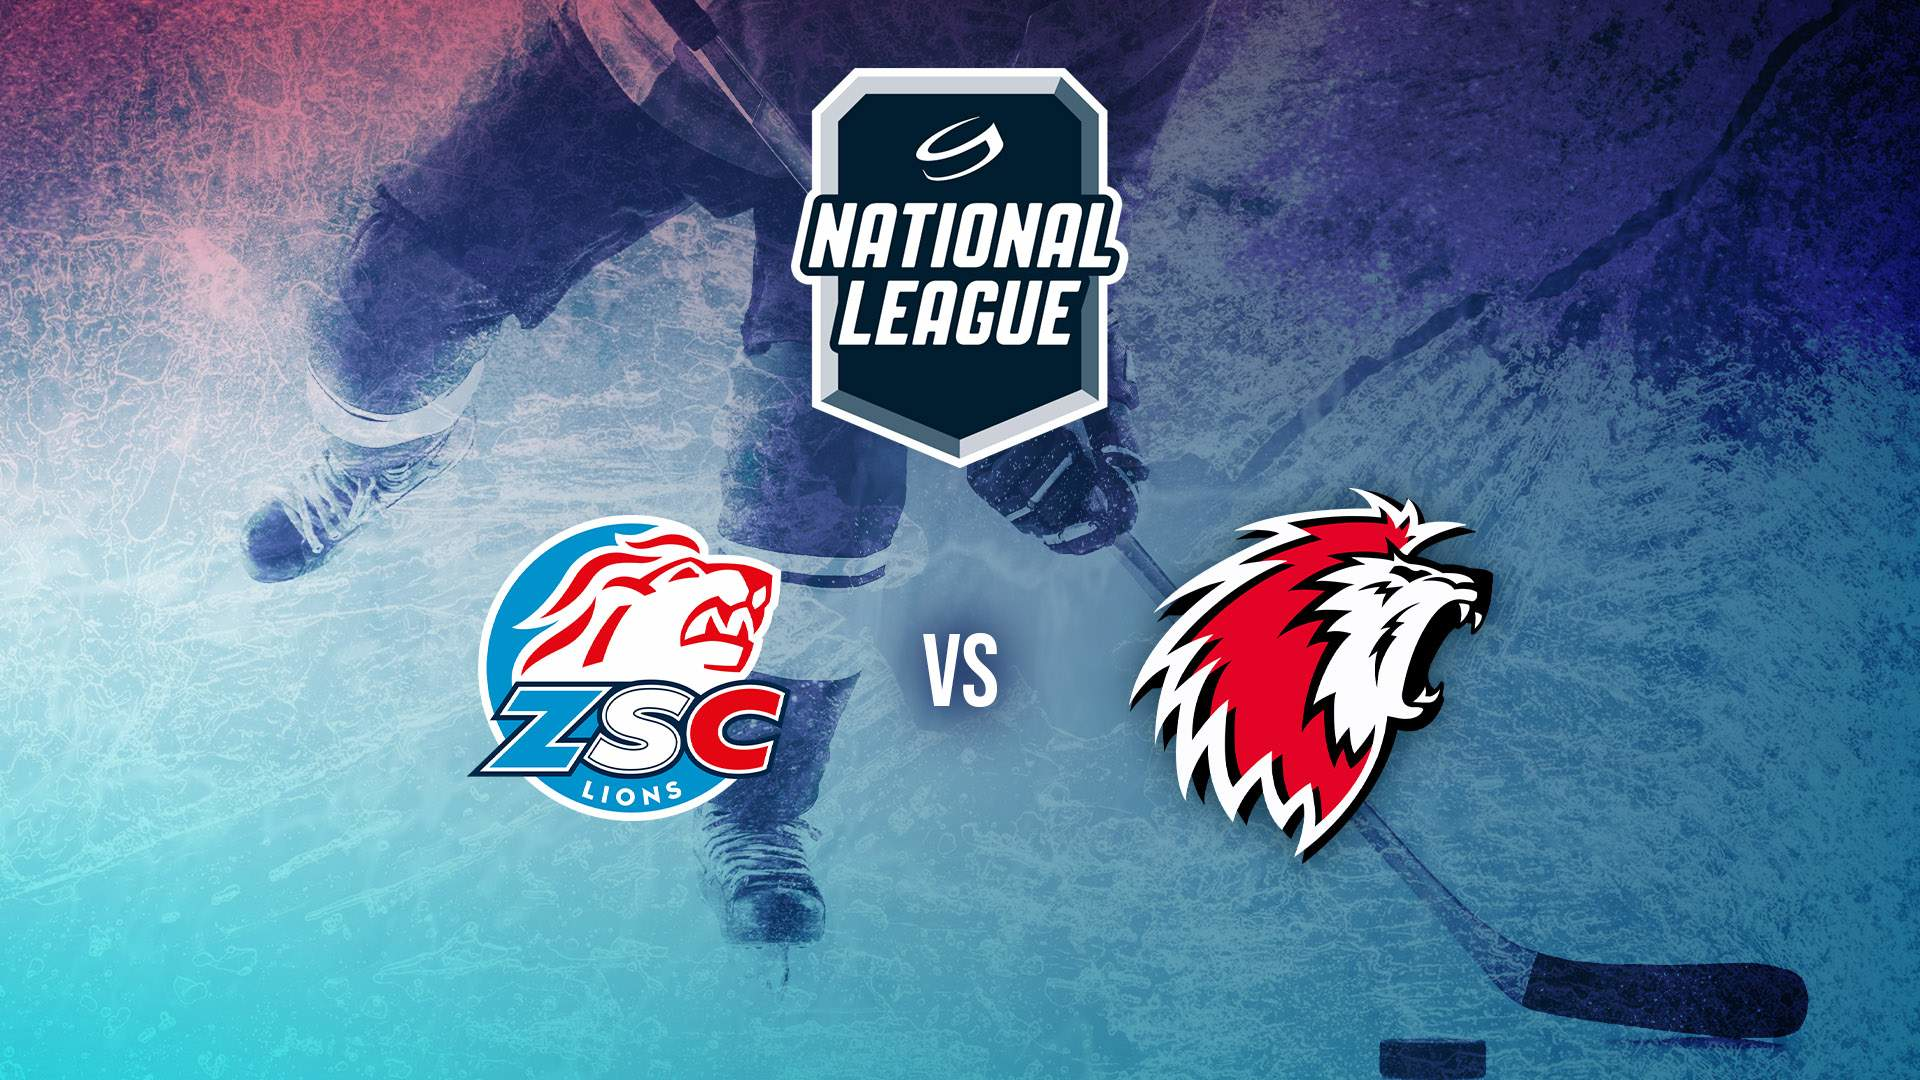 Switzerland National League. ZSC Lions - Lausanne